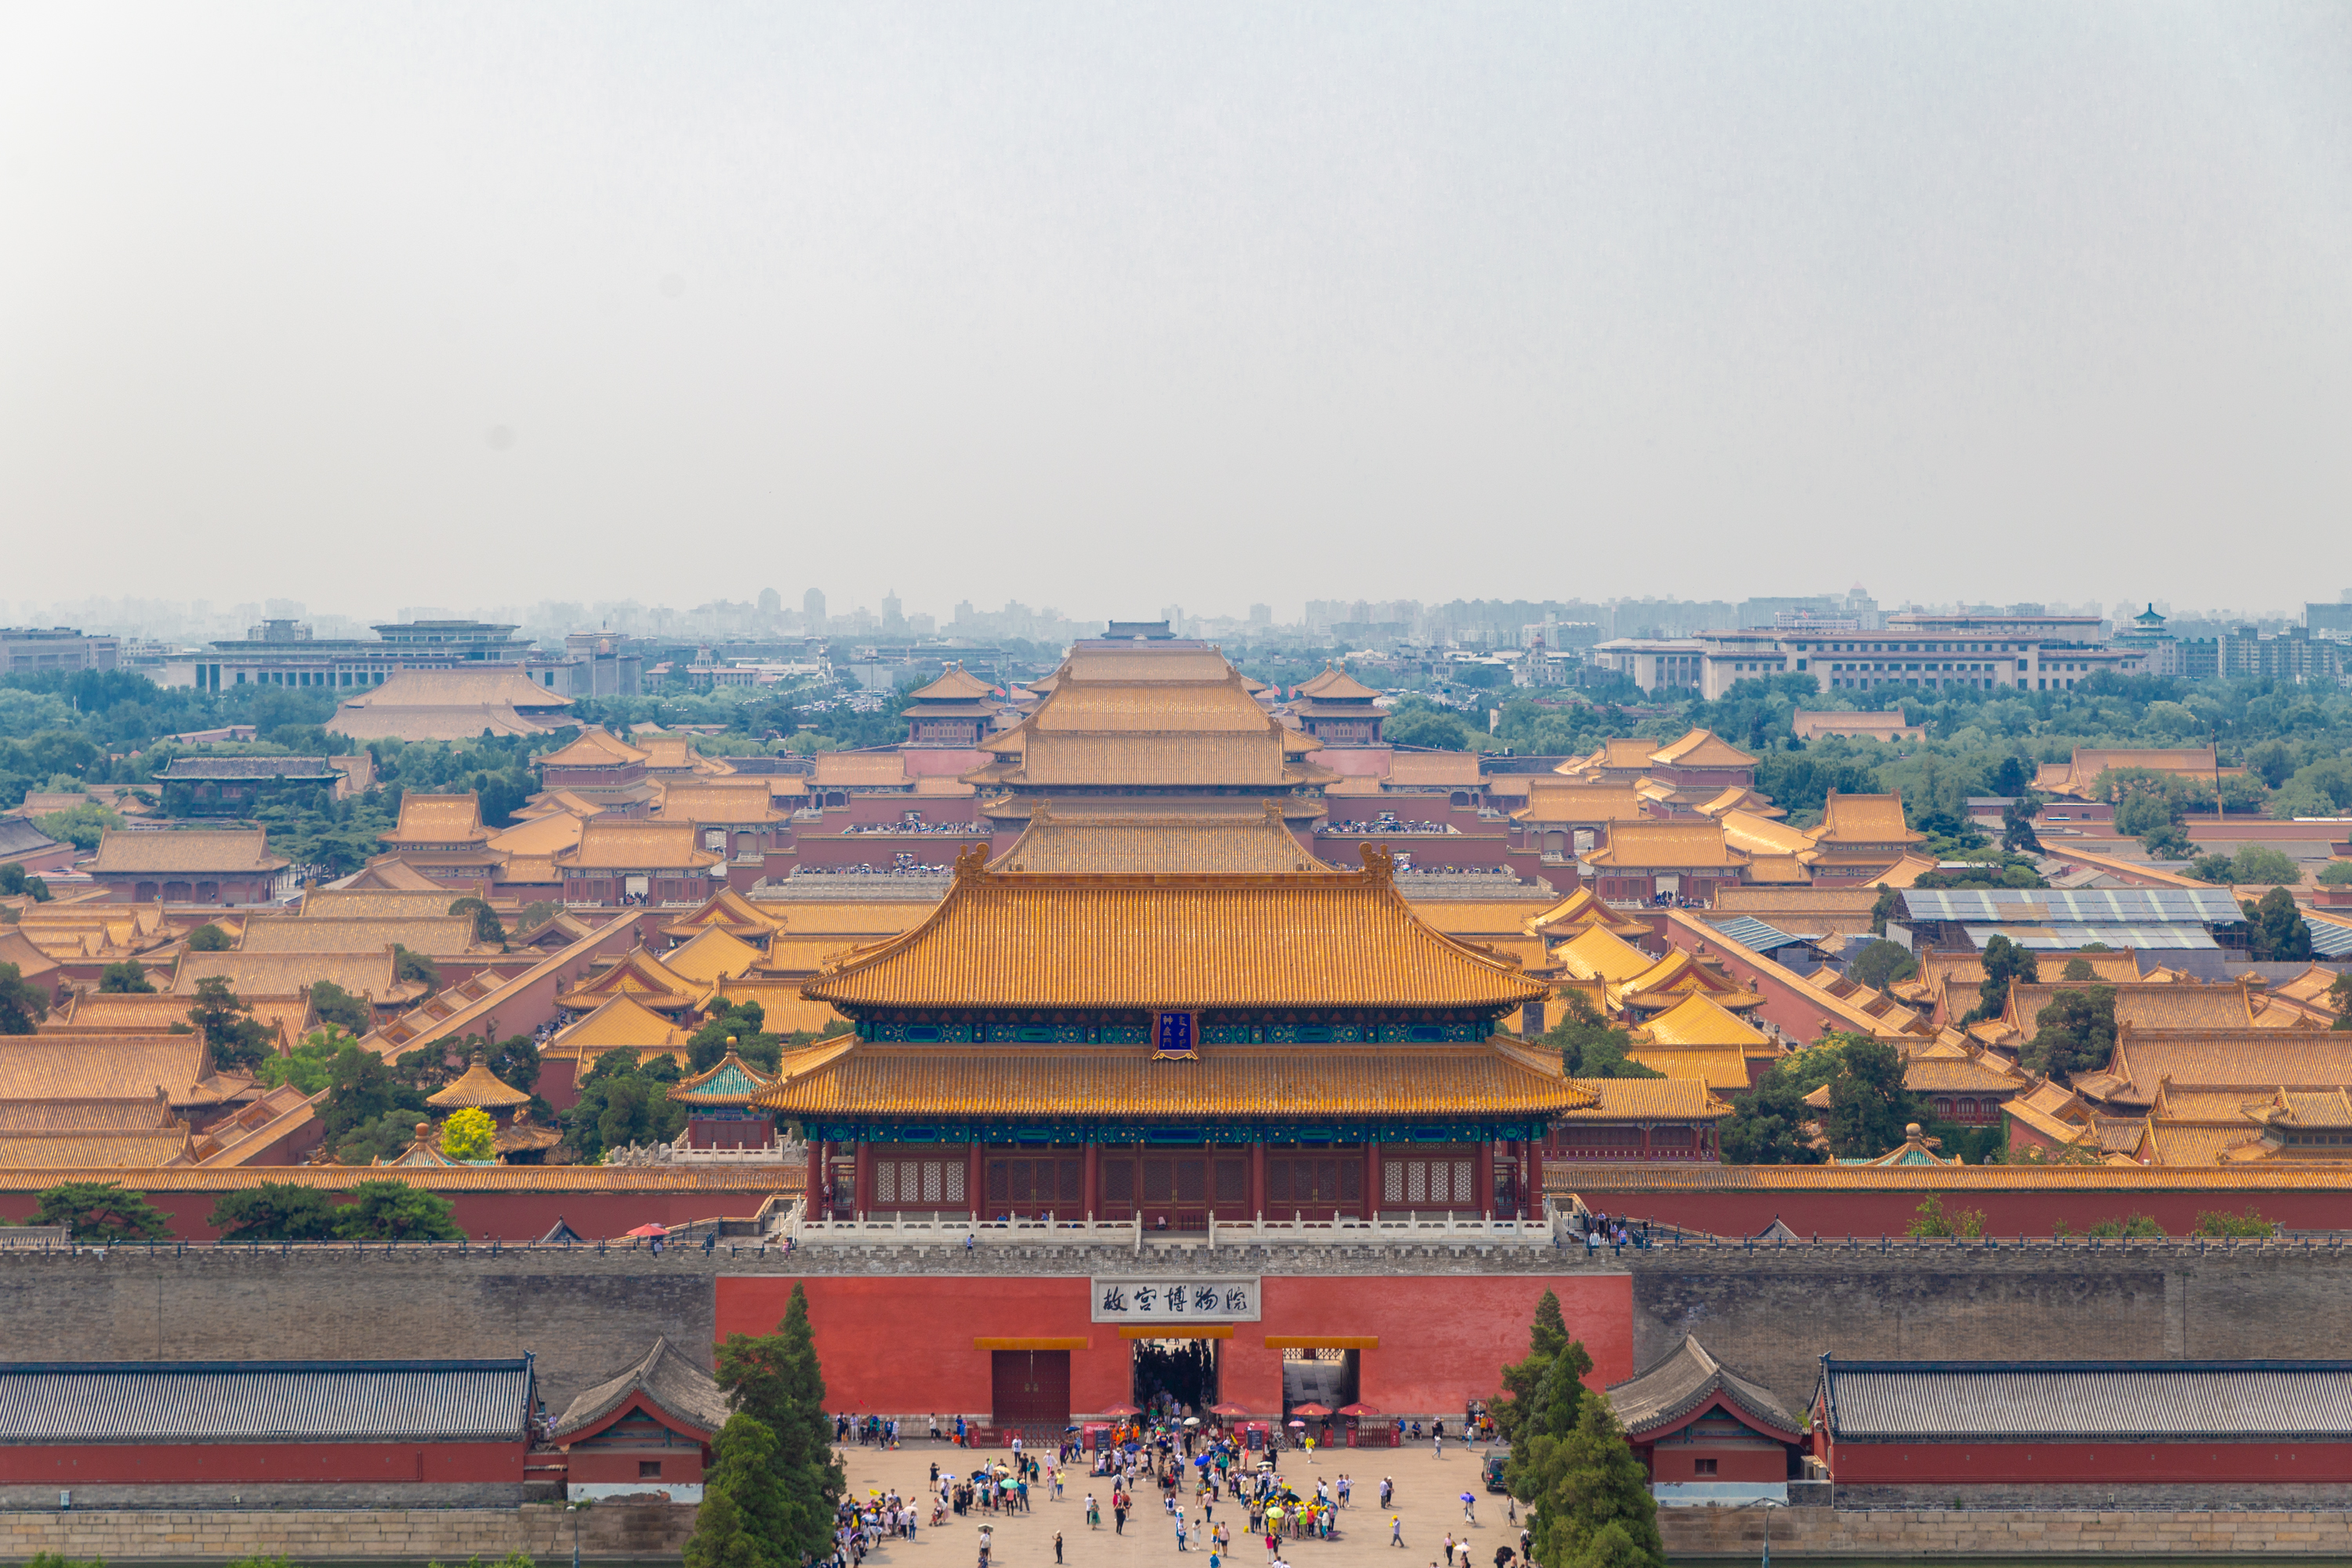 北京门票最便宜的景区,可俯瞰故宫全景,只需2元